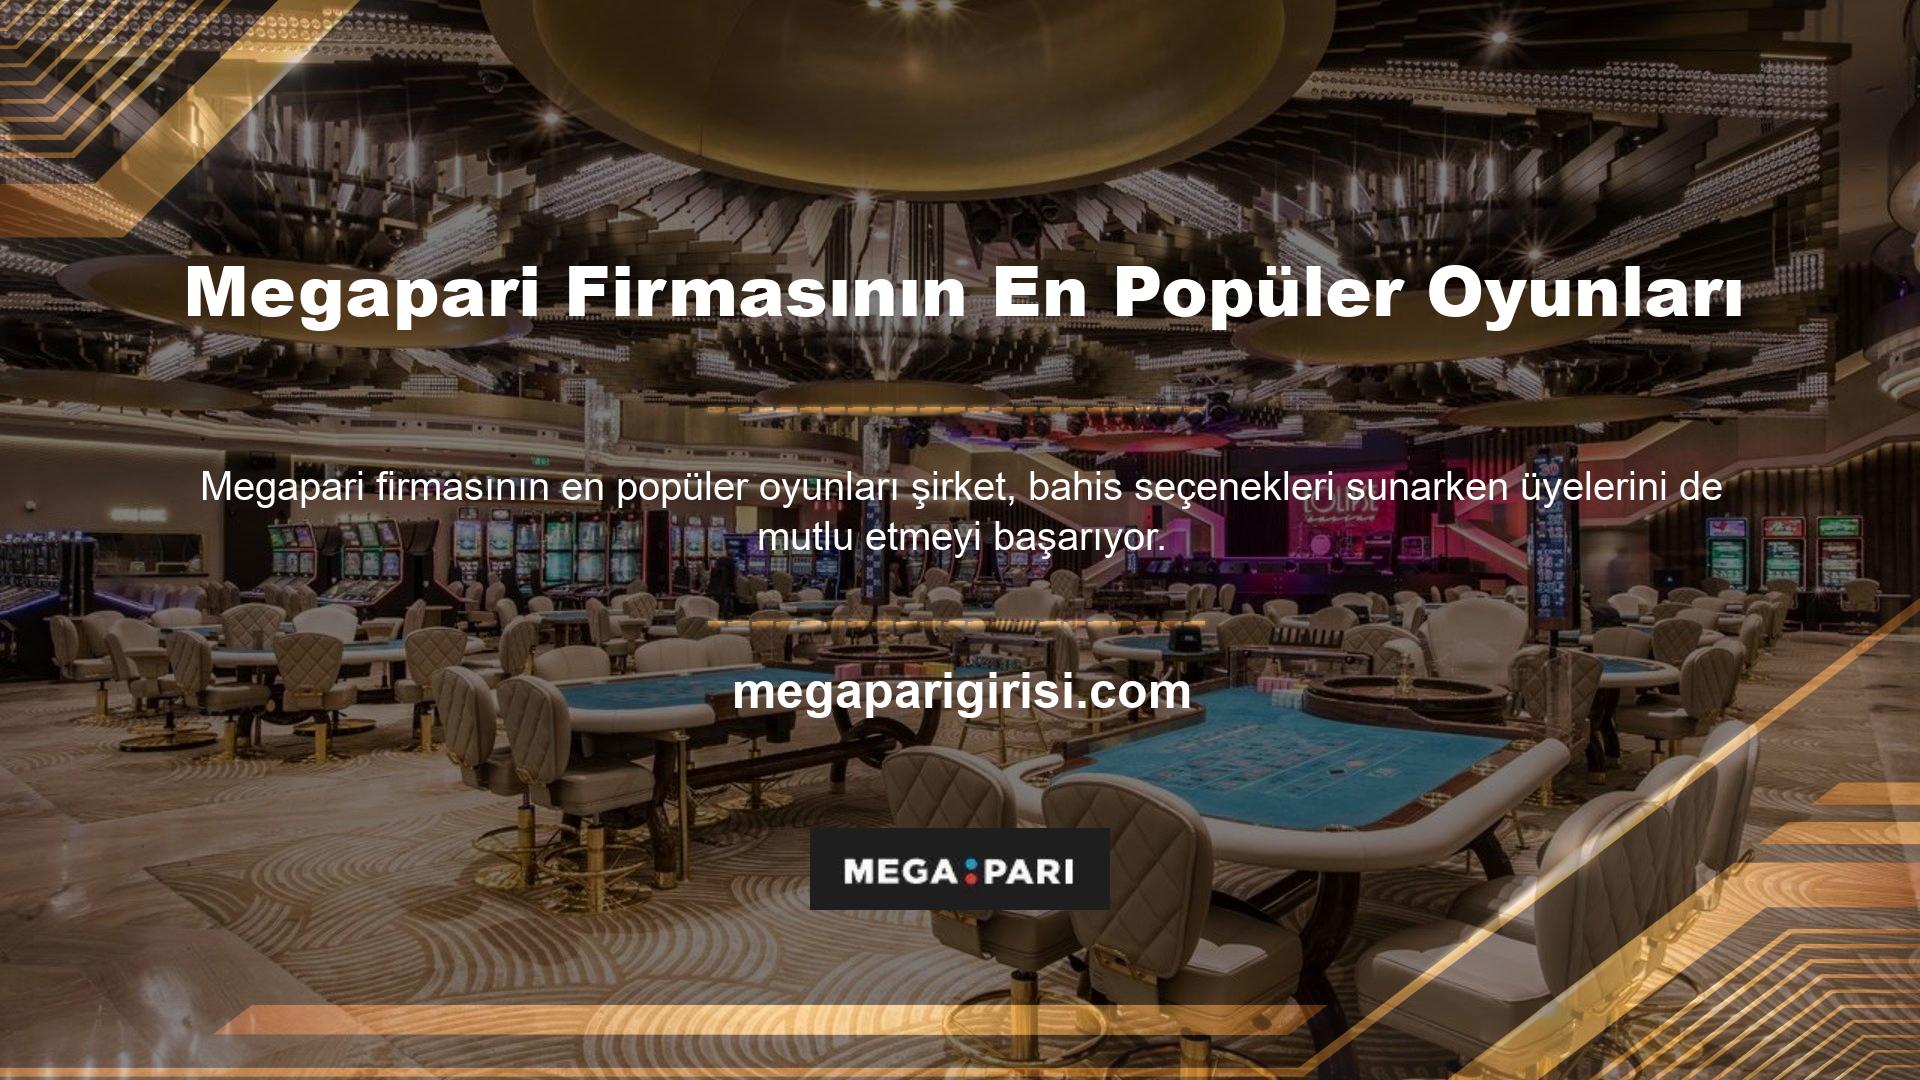 Megapari en popüler oyunu olan Canlı Casino hizmetine giriş yaptığınızda yüzlerce farklı oyun seçeneğini göreceksiniz